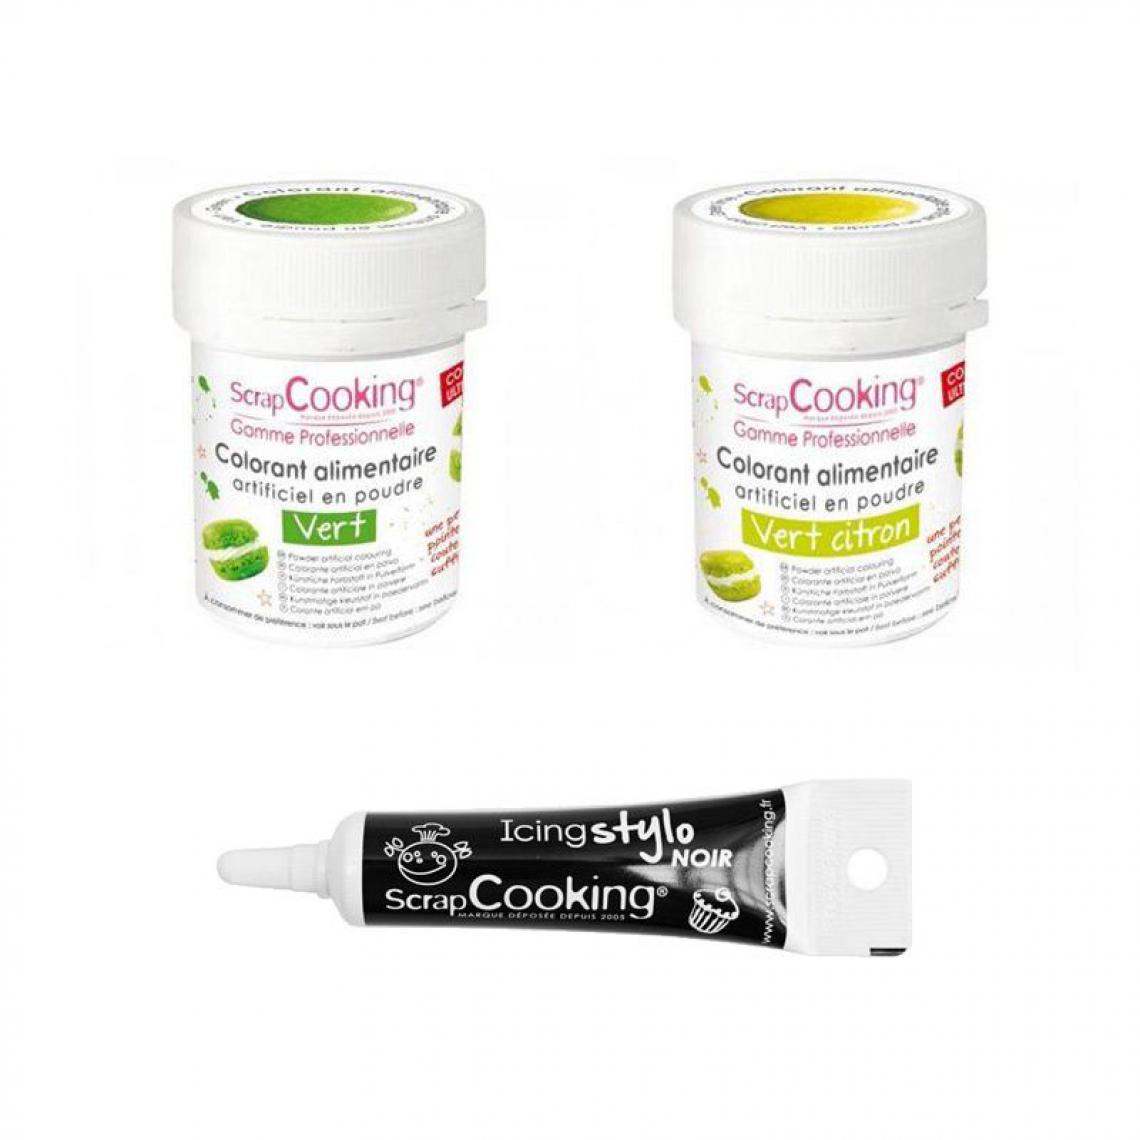 Scrapcooking - 2 colorants alimentaires vert citron-vert + Stylo glaçage noir - Kits créatifs